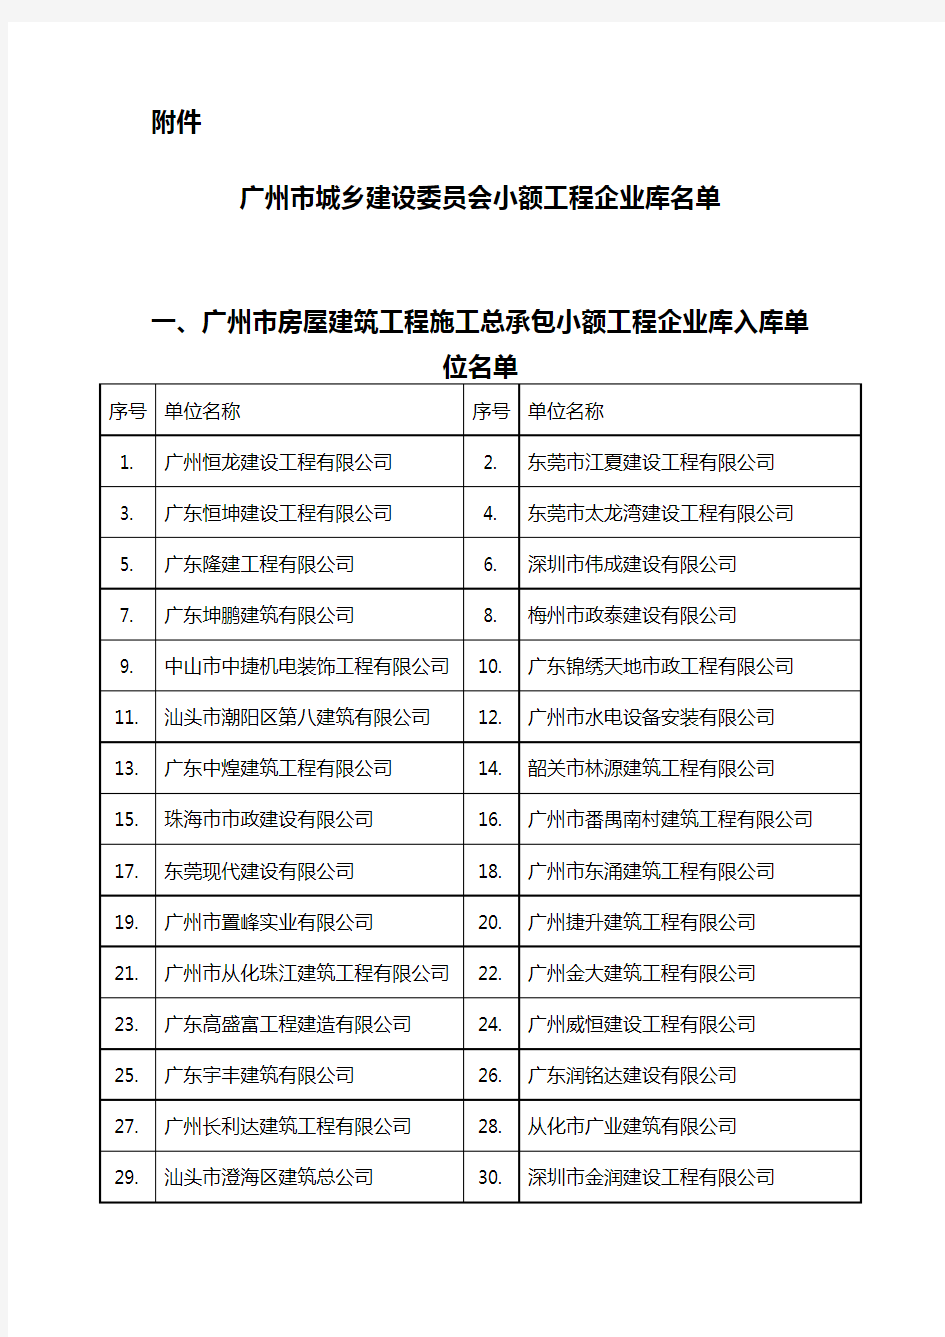 广州市城乡建设委员会小额工程企业库名单